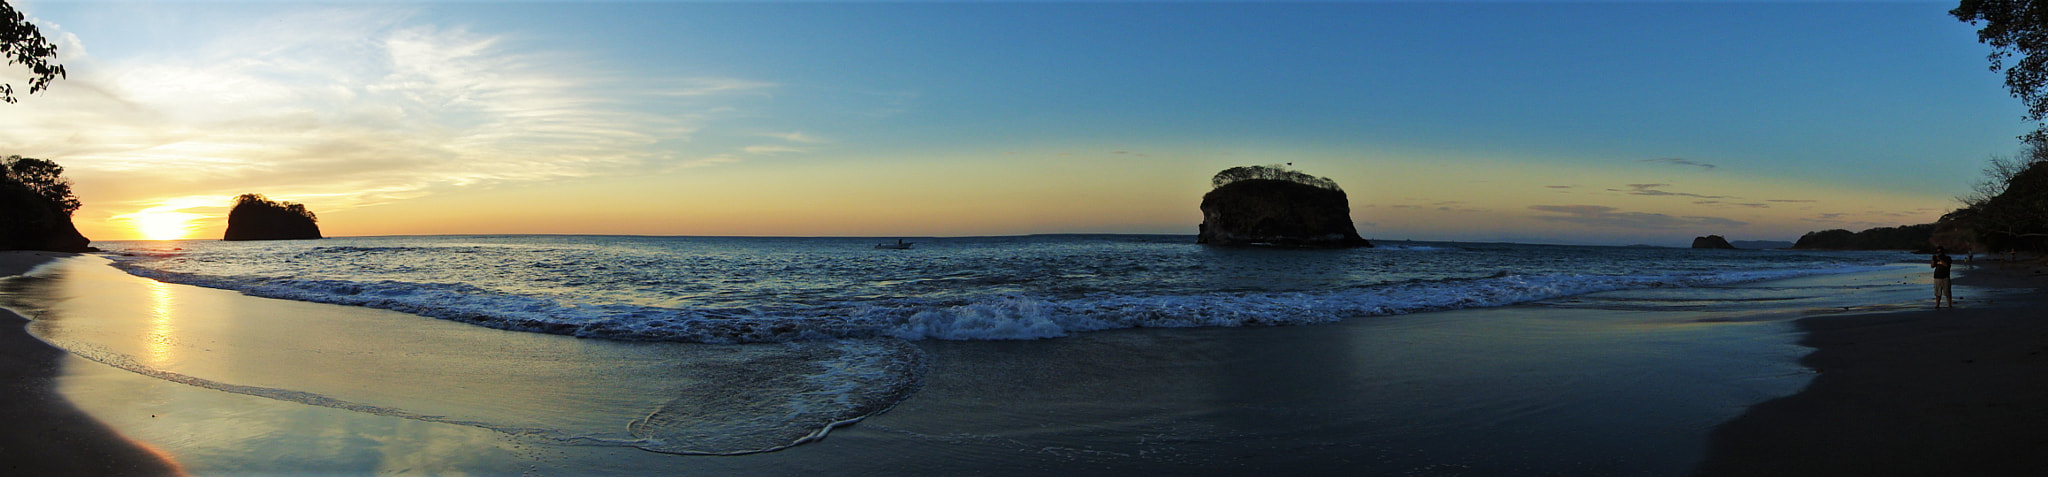 Sony DSC-WX5 sample photo. Bahía de los piratas, guanacaste, costa rica photography